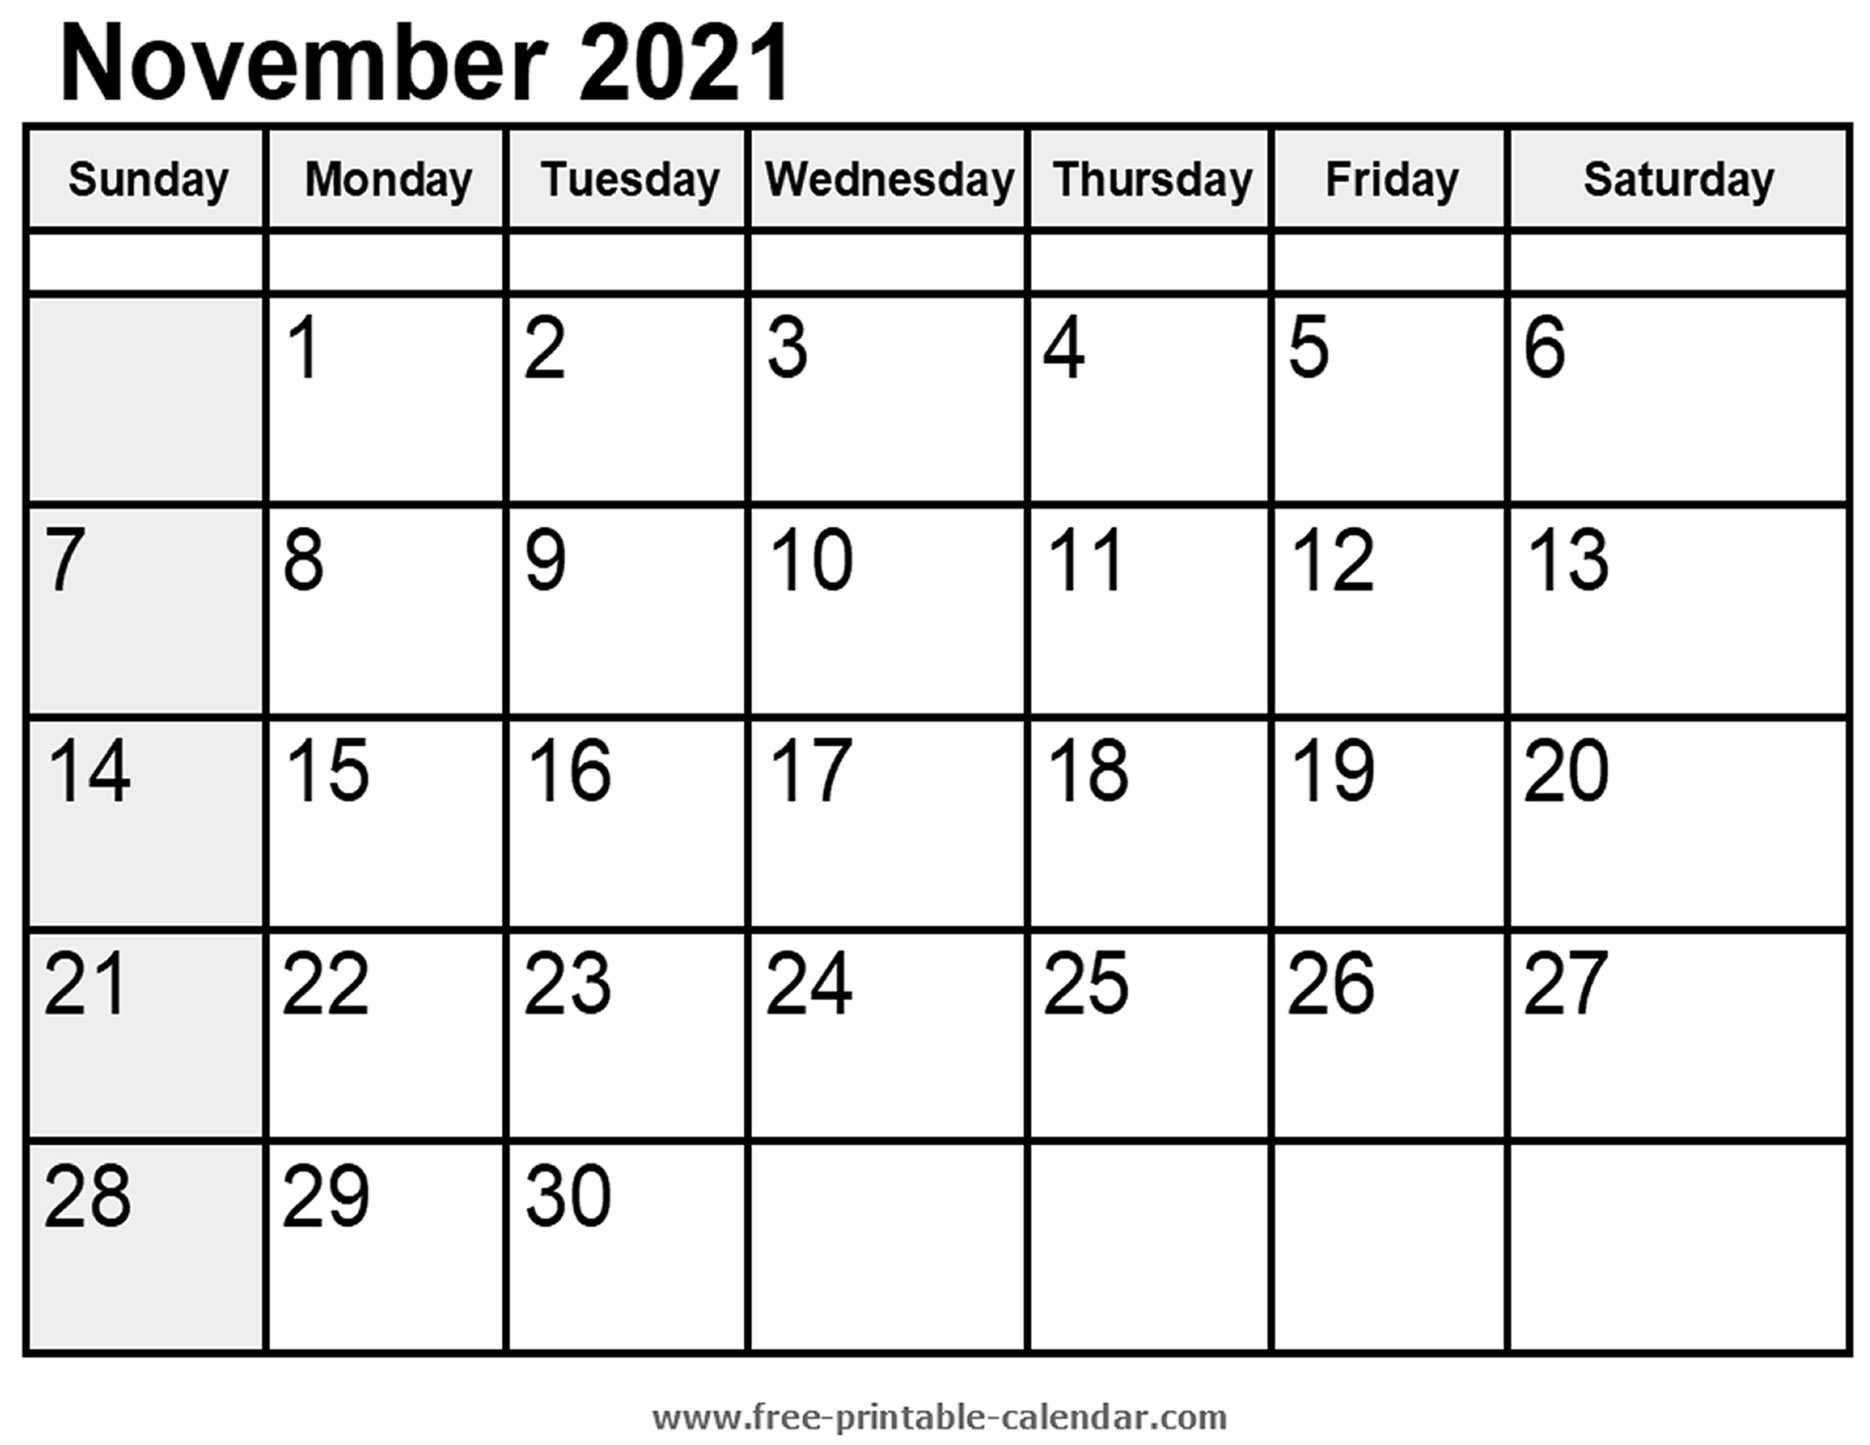 November 2021 Calendar Printable | Free Letter Templates November 2021 Calendar Printable Free